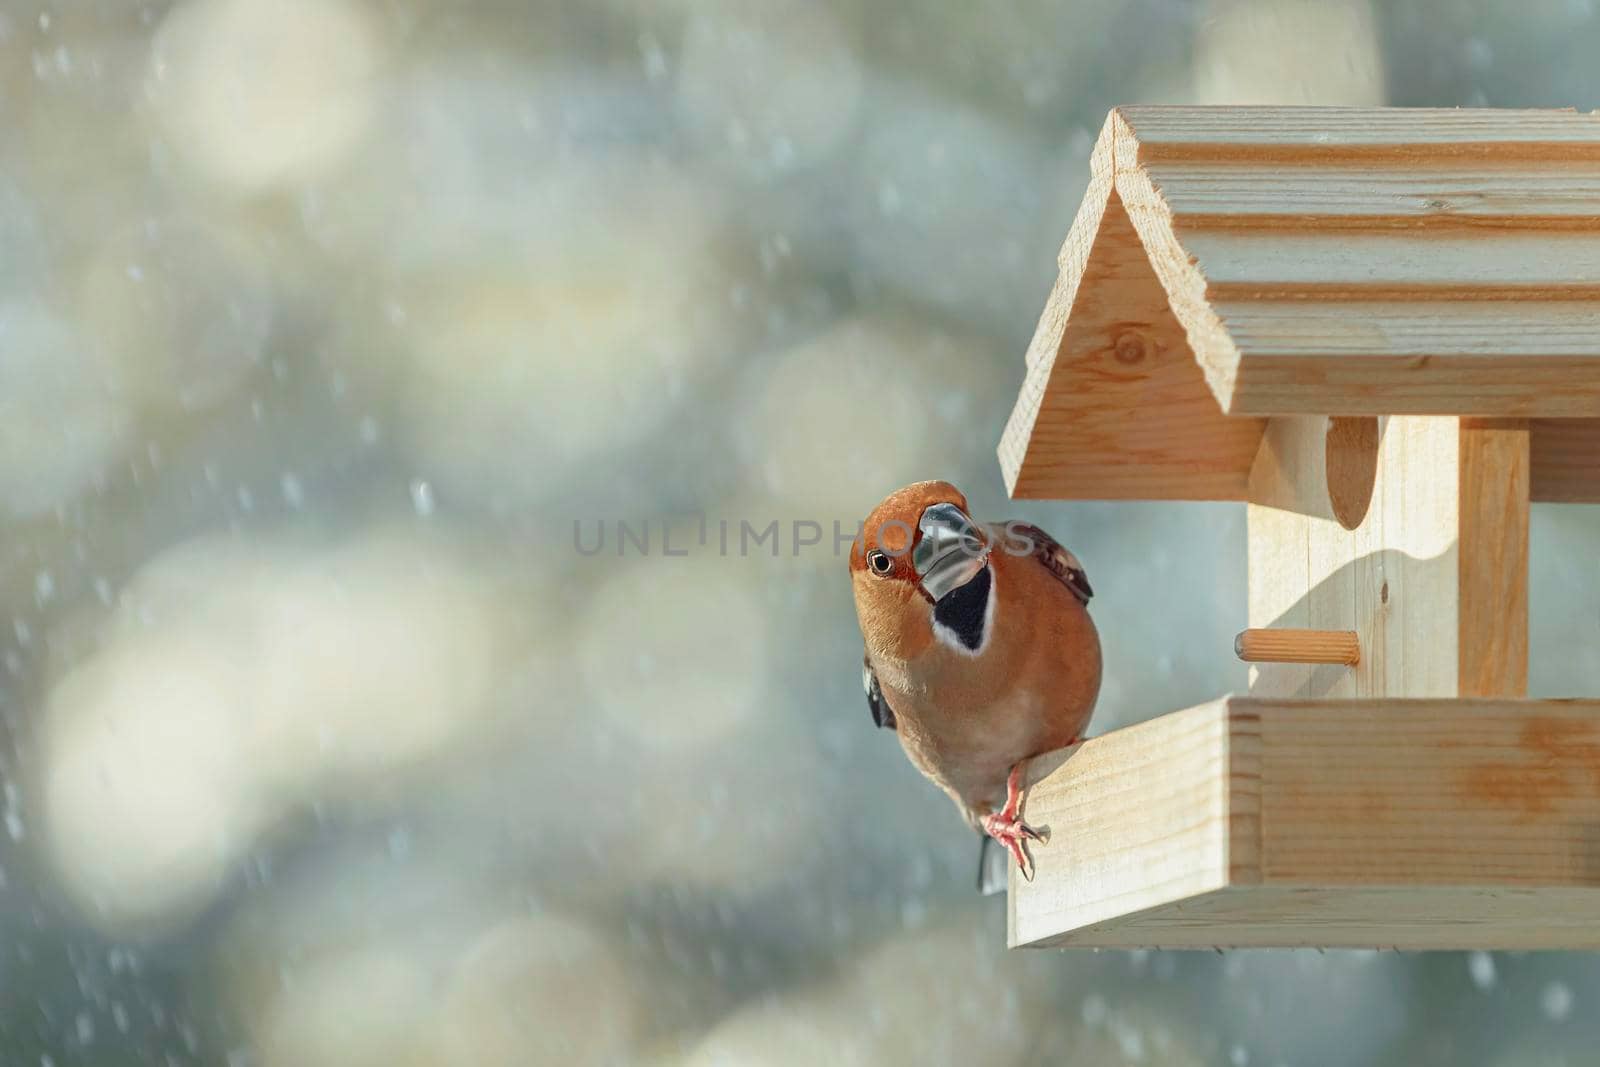 Hawfinch in the bird feeder by SNR